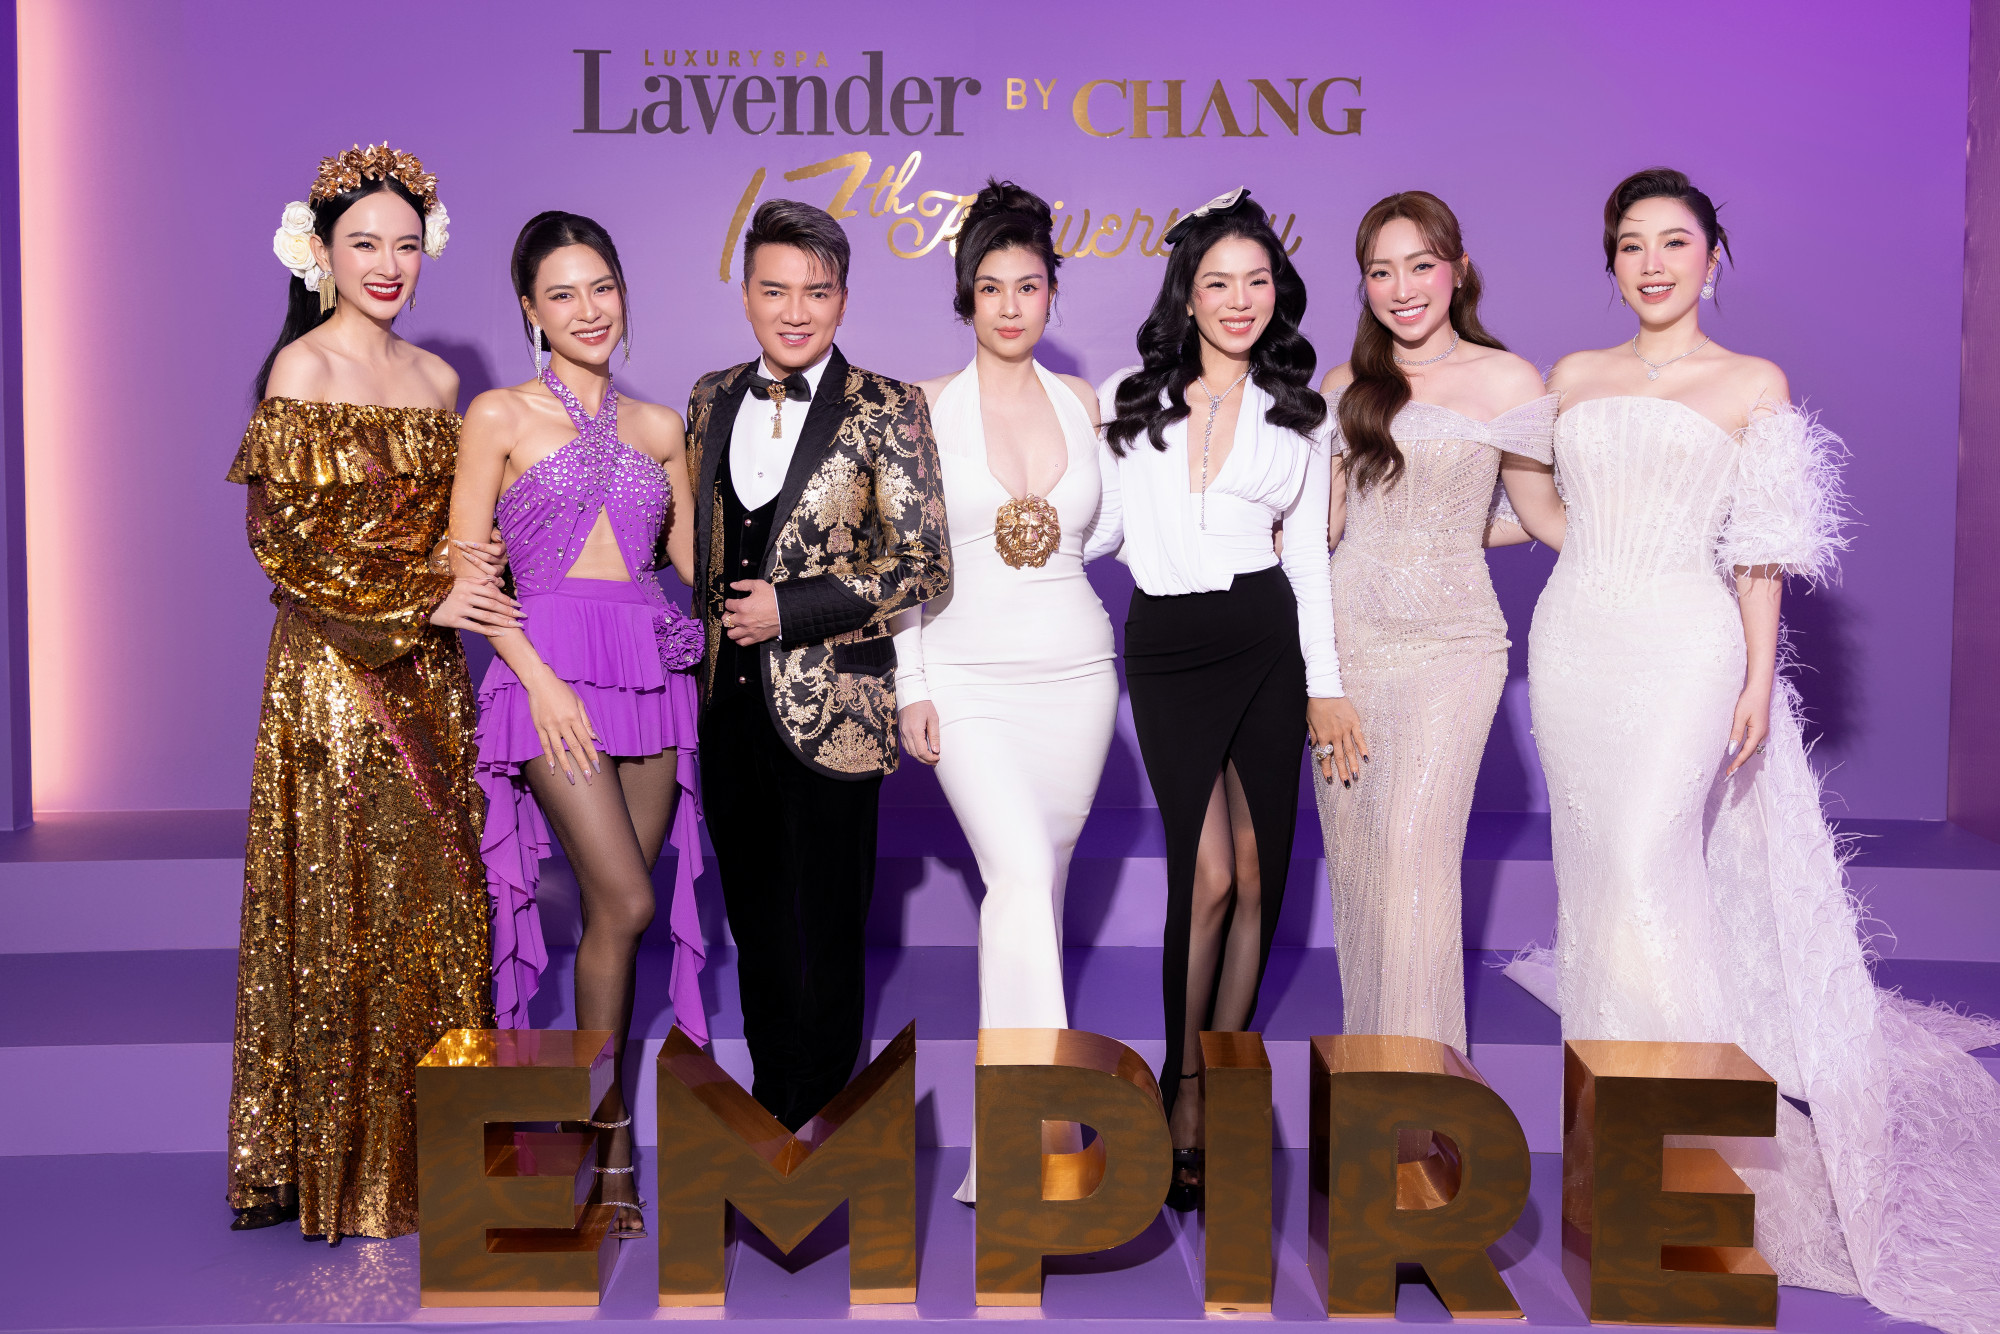 Sự kiện Lavender By Chang vừa tổ chức dạ tiệc mừng sinh nhật 17 năm. Dạ tiệc được đầu tư kỹ xảo 3D mang tới trải nghiệm đa giác quan với sự góp mặt của nhiều ngôi sao hàng đầu Vbiz như Đàm Vĩnh Hưng, Lệ Quyên, Bảo Thy, Hà Nhi, Mai Tiến Dũng…  